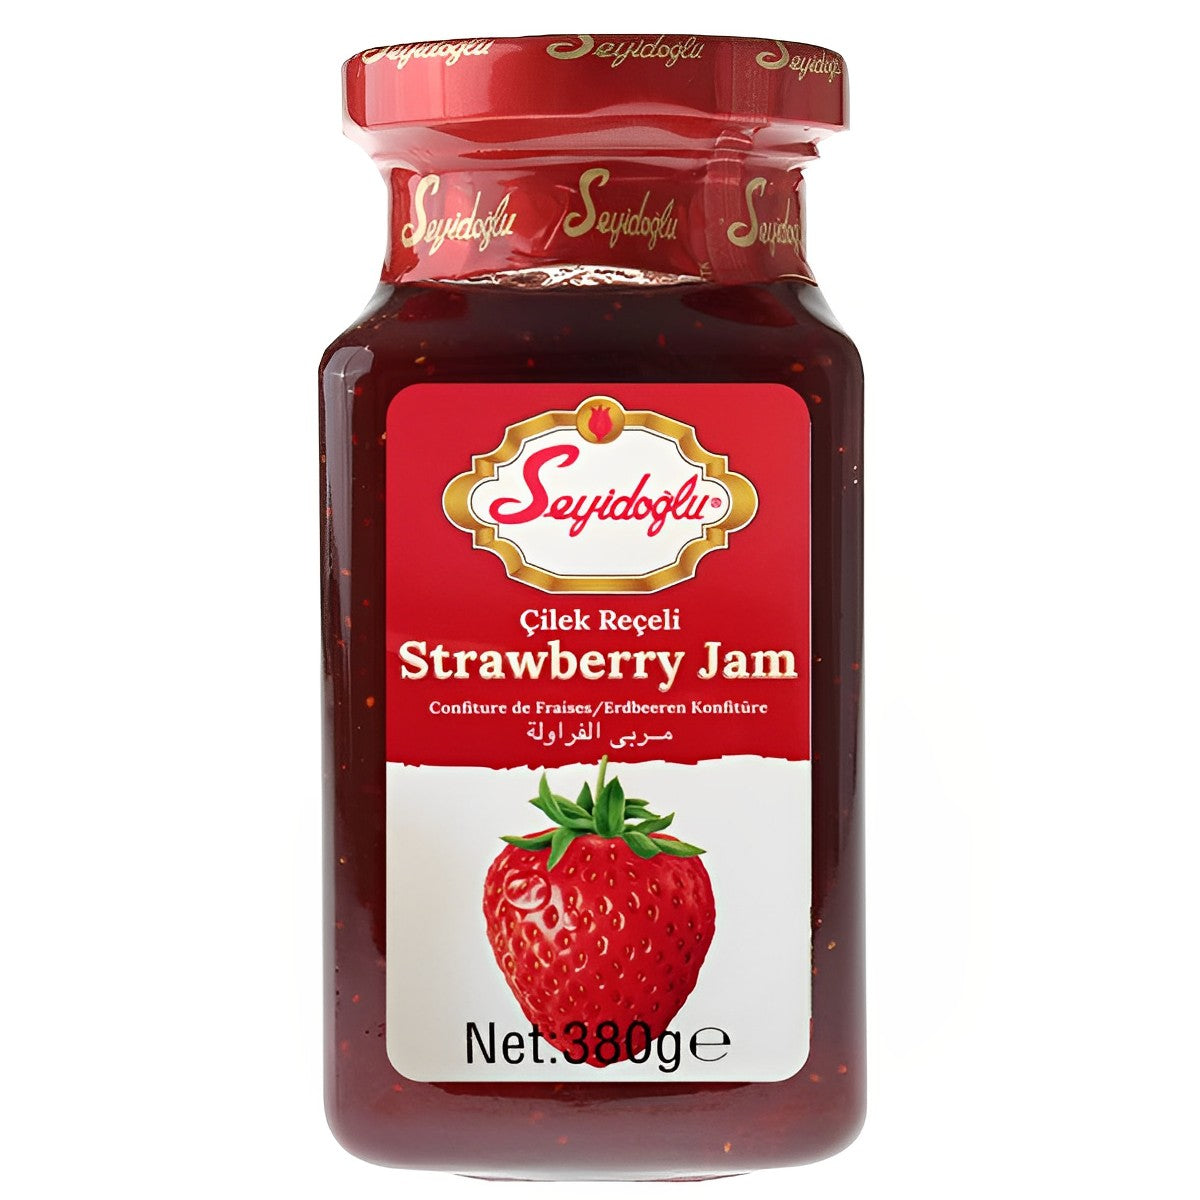 Seyidoglu - Strawberry Jam - 380g - Continental Food Store